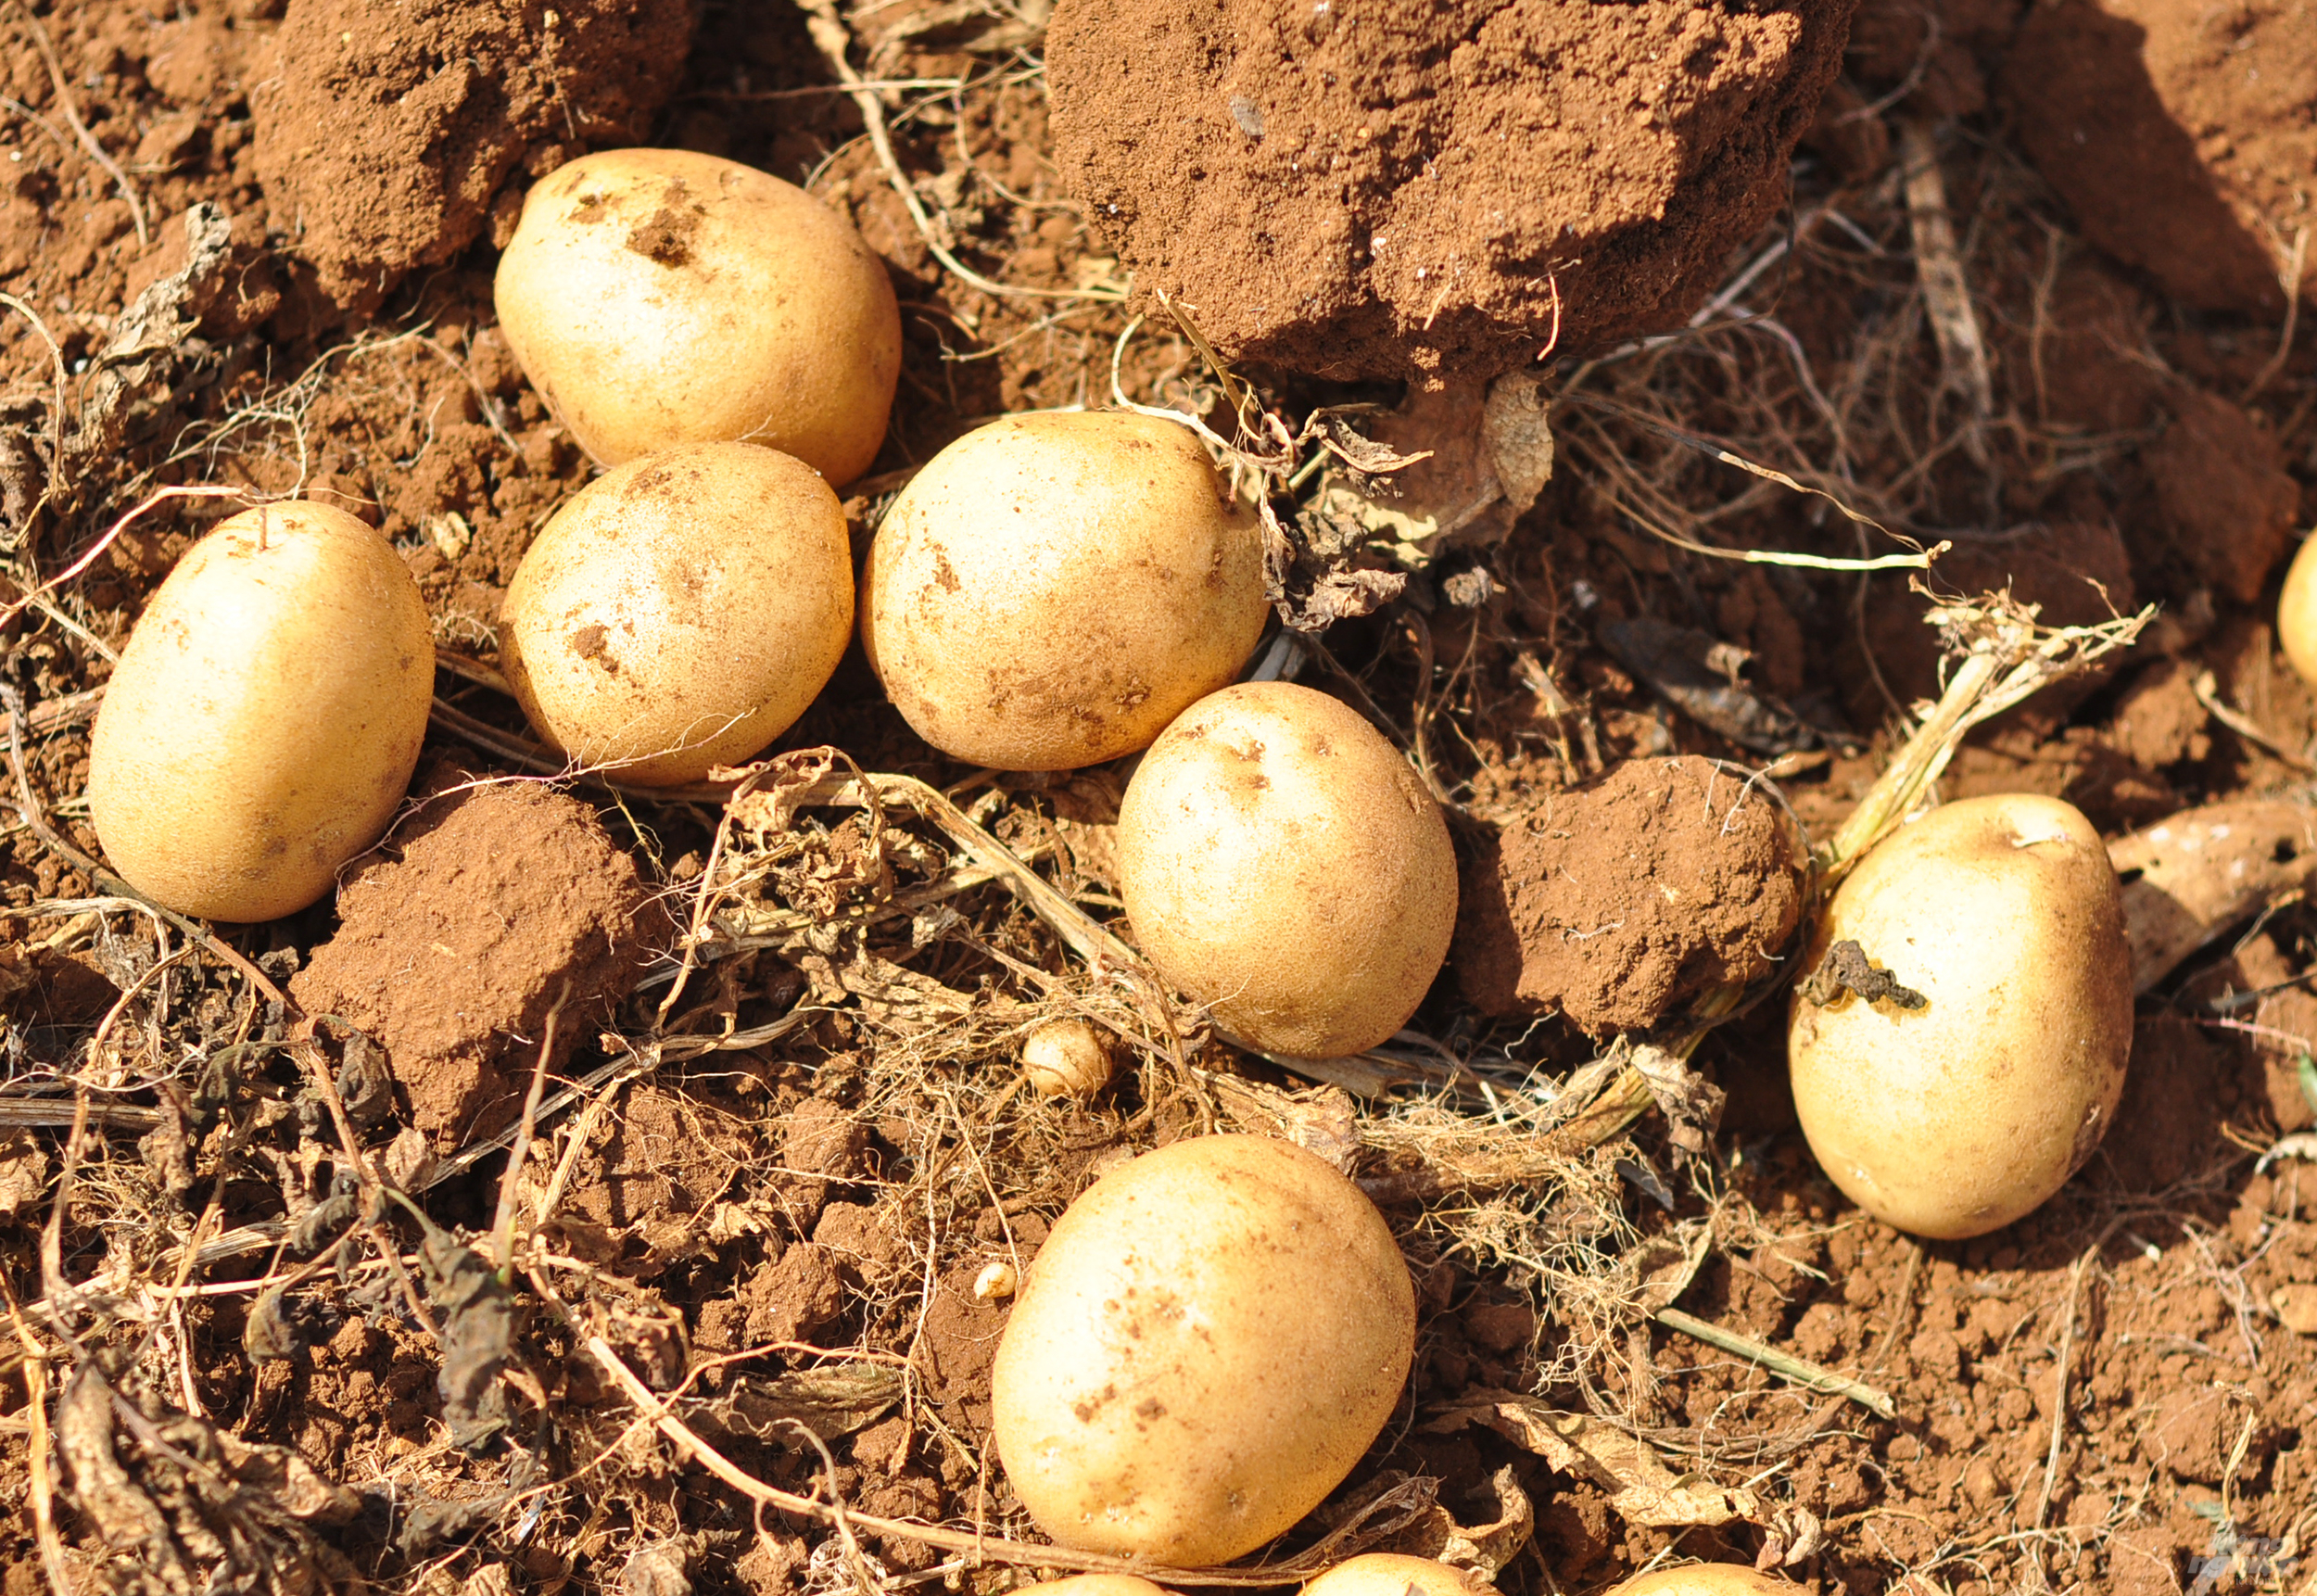 Vùng Quảng Lập có khí hậu mát mẻ, đất đỏ bazan nên phù hợp cho việc phát triển khoai tây và các giống rau, củ khác. 